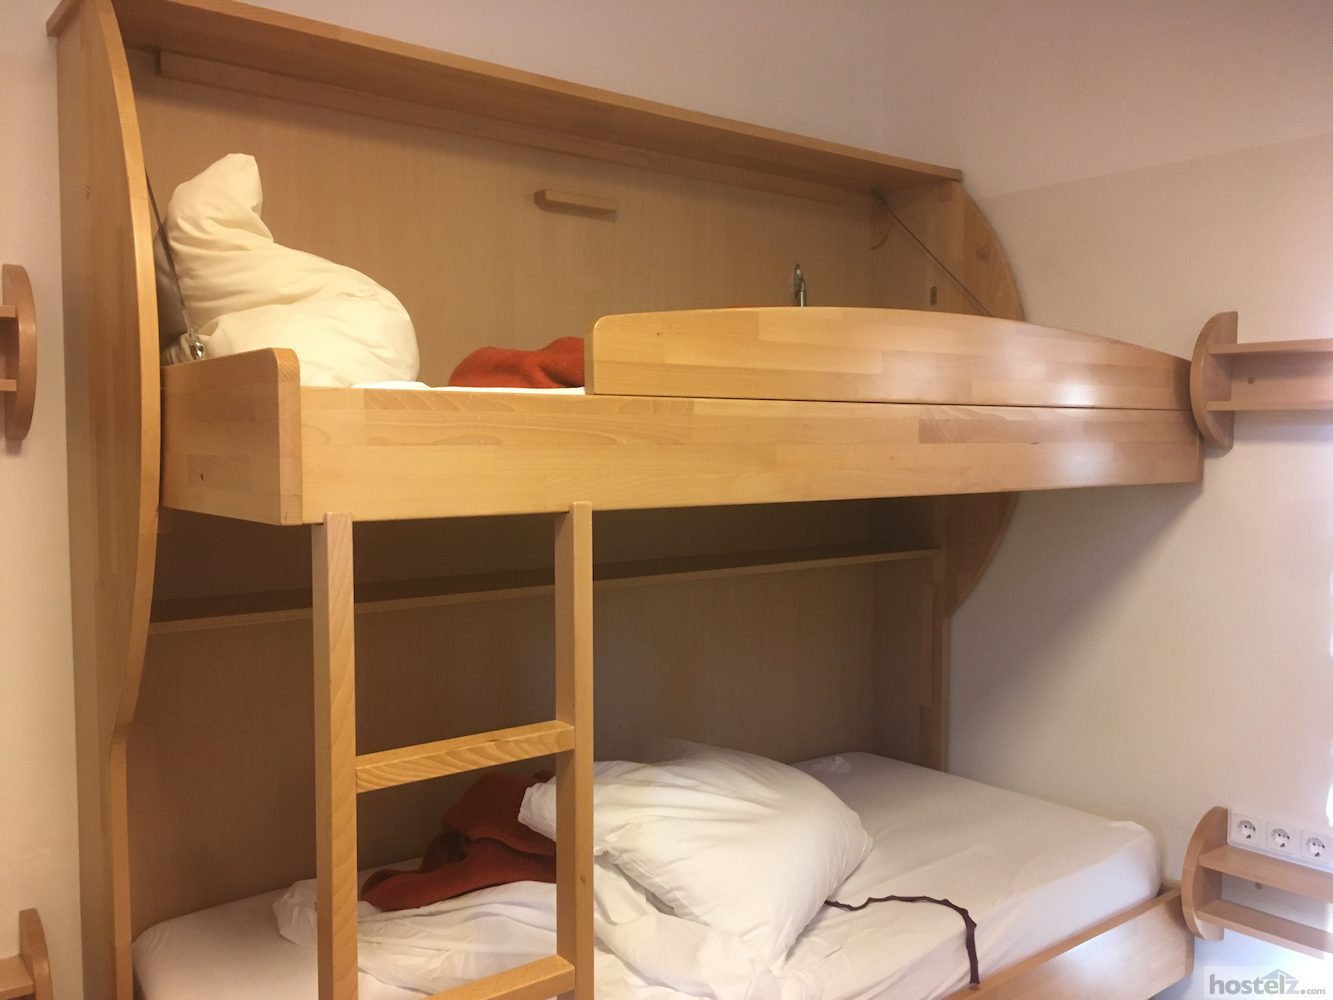 4 bed dorm room